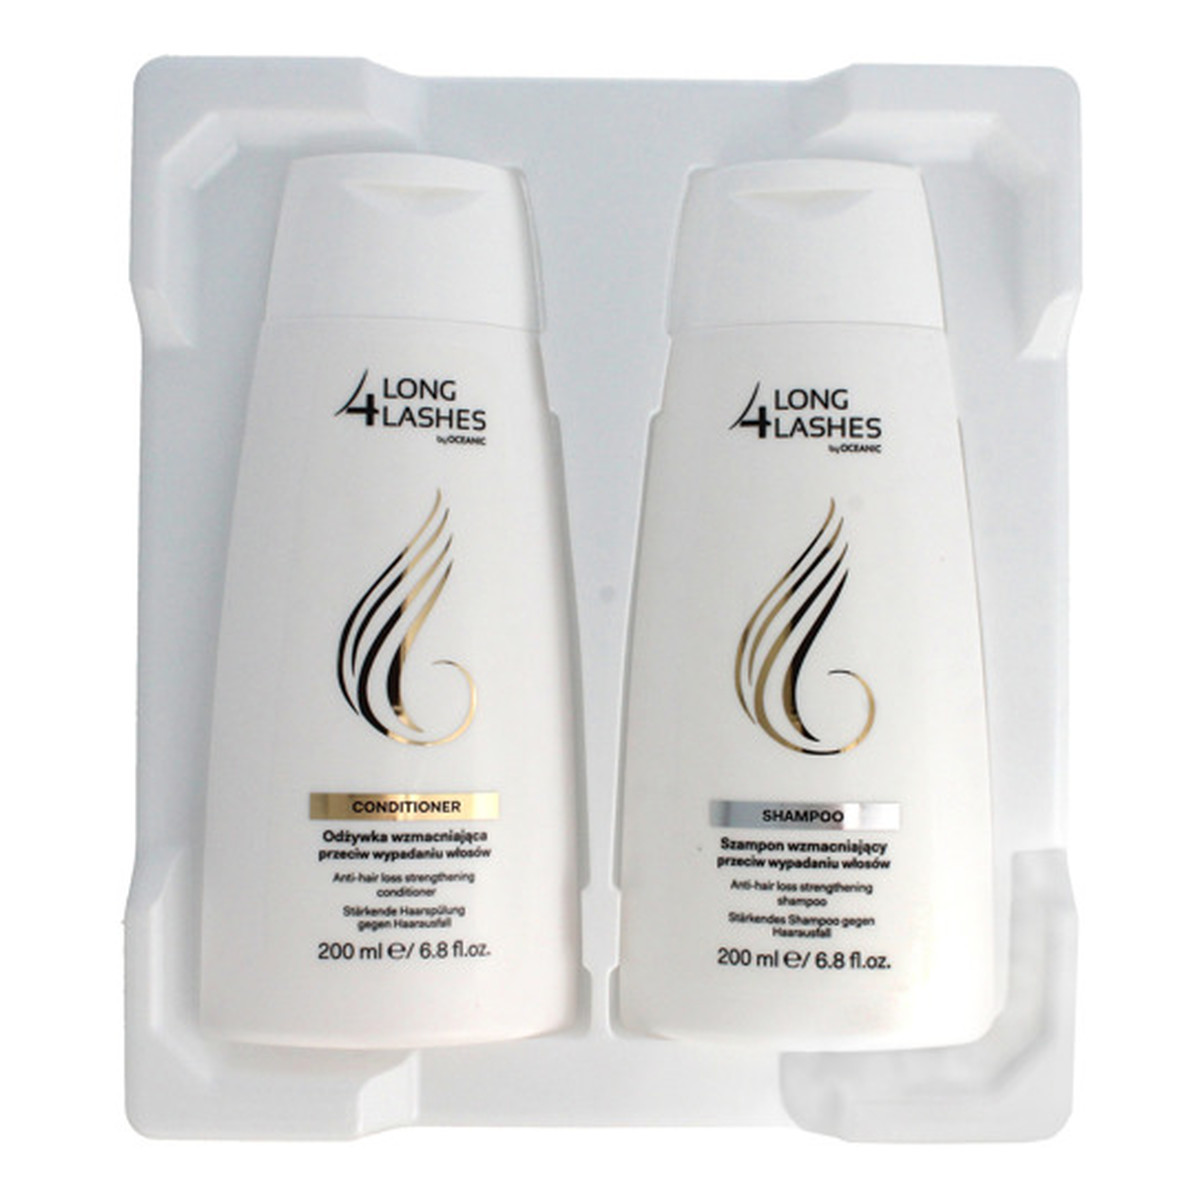 AA Long 4 Lashes Zestaw Prezentowy szampon Do Włosów +odżywka Do Włosów